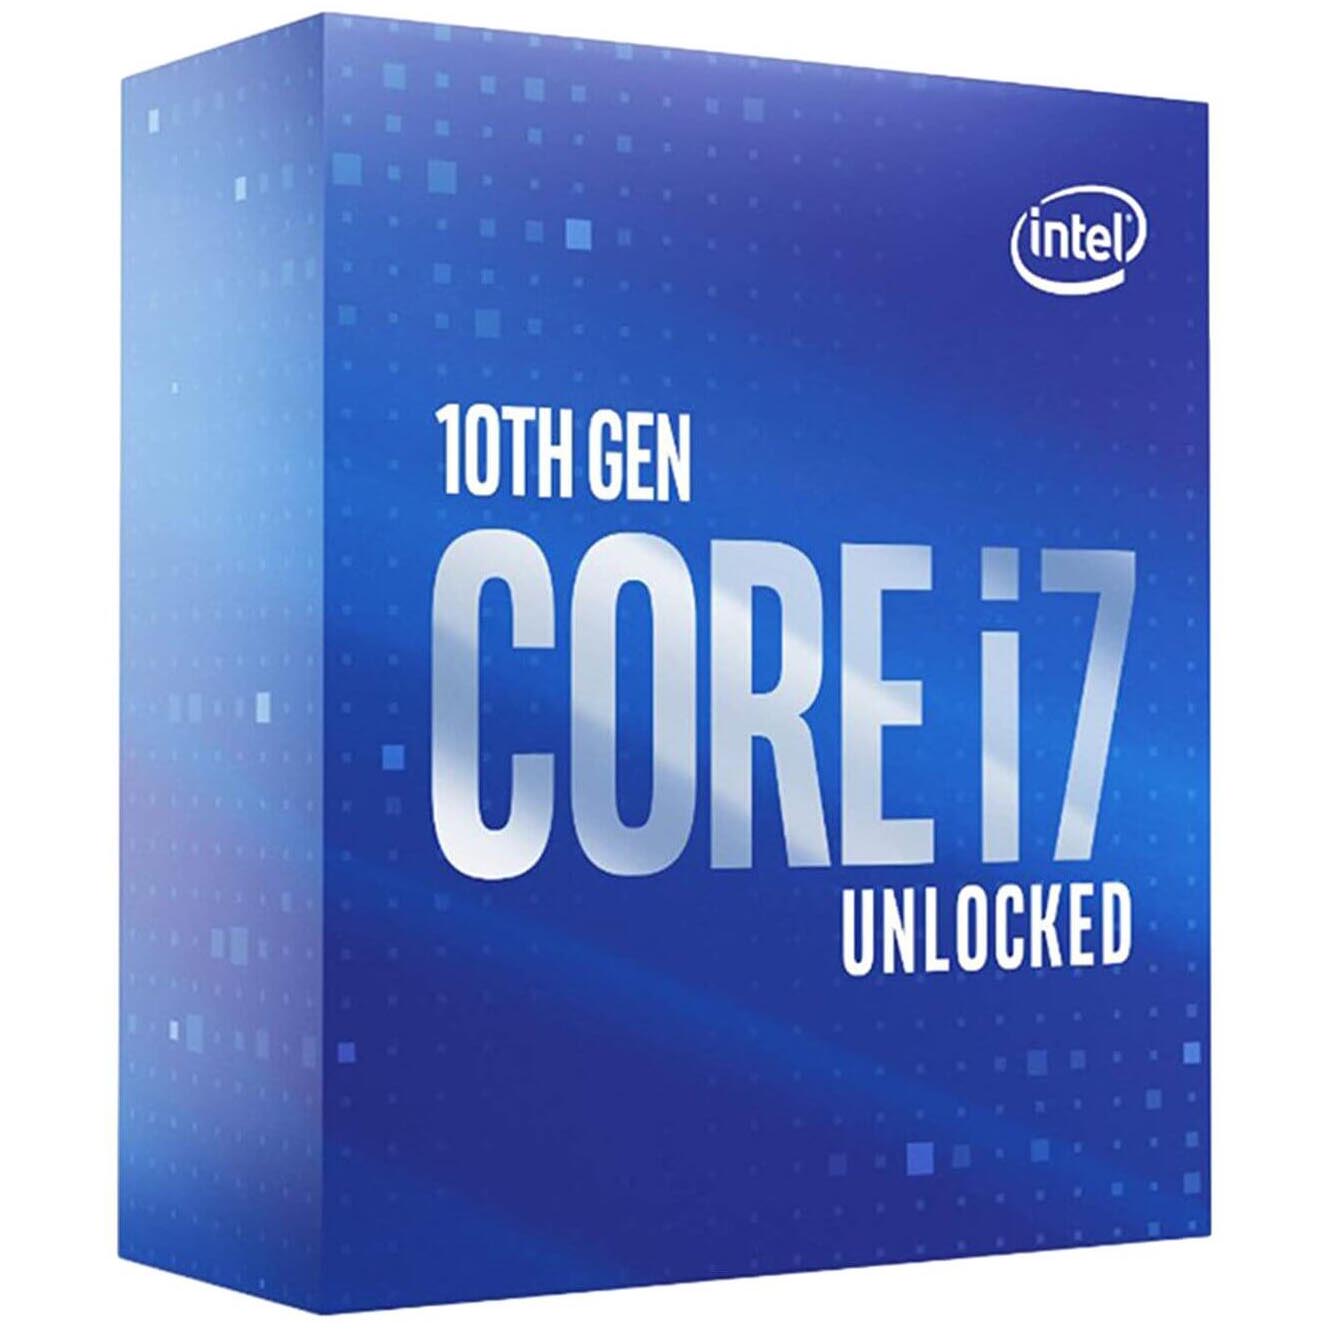 Процессор Intel Core i7-10700KF BOX (без кулера), LGA 1200 процессор intel core i3 10100f box без кулера